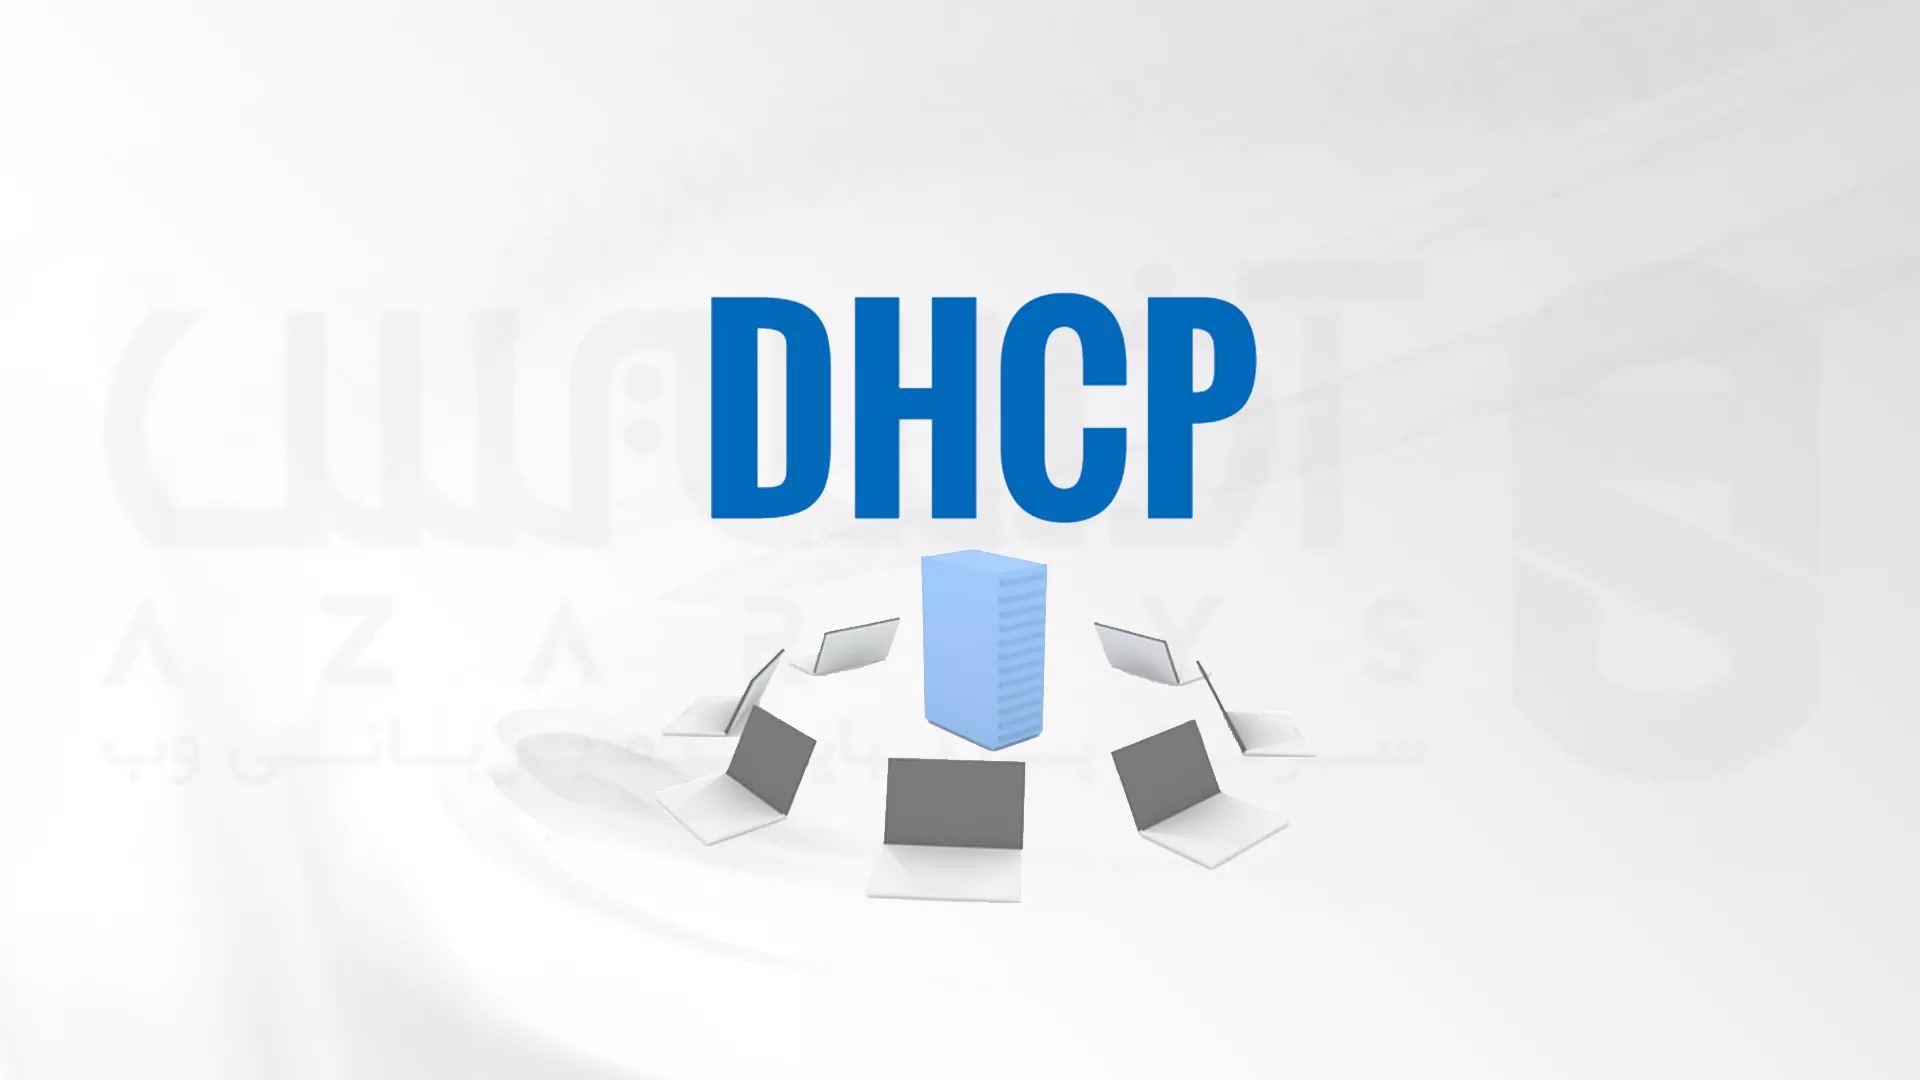 نحوه نصب سرور DHCP در اوبونتو و دبیان